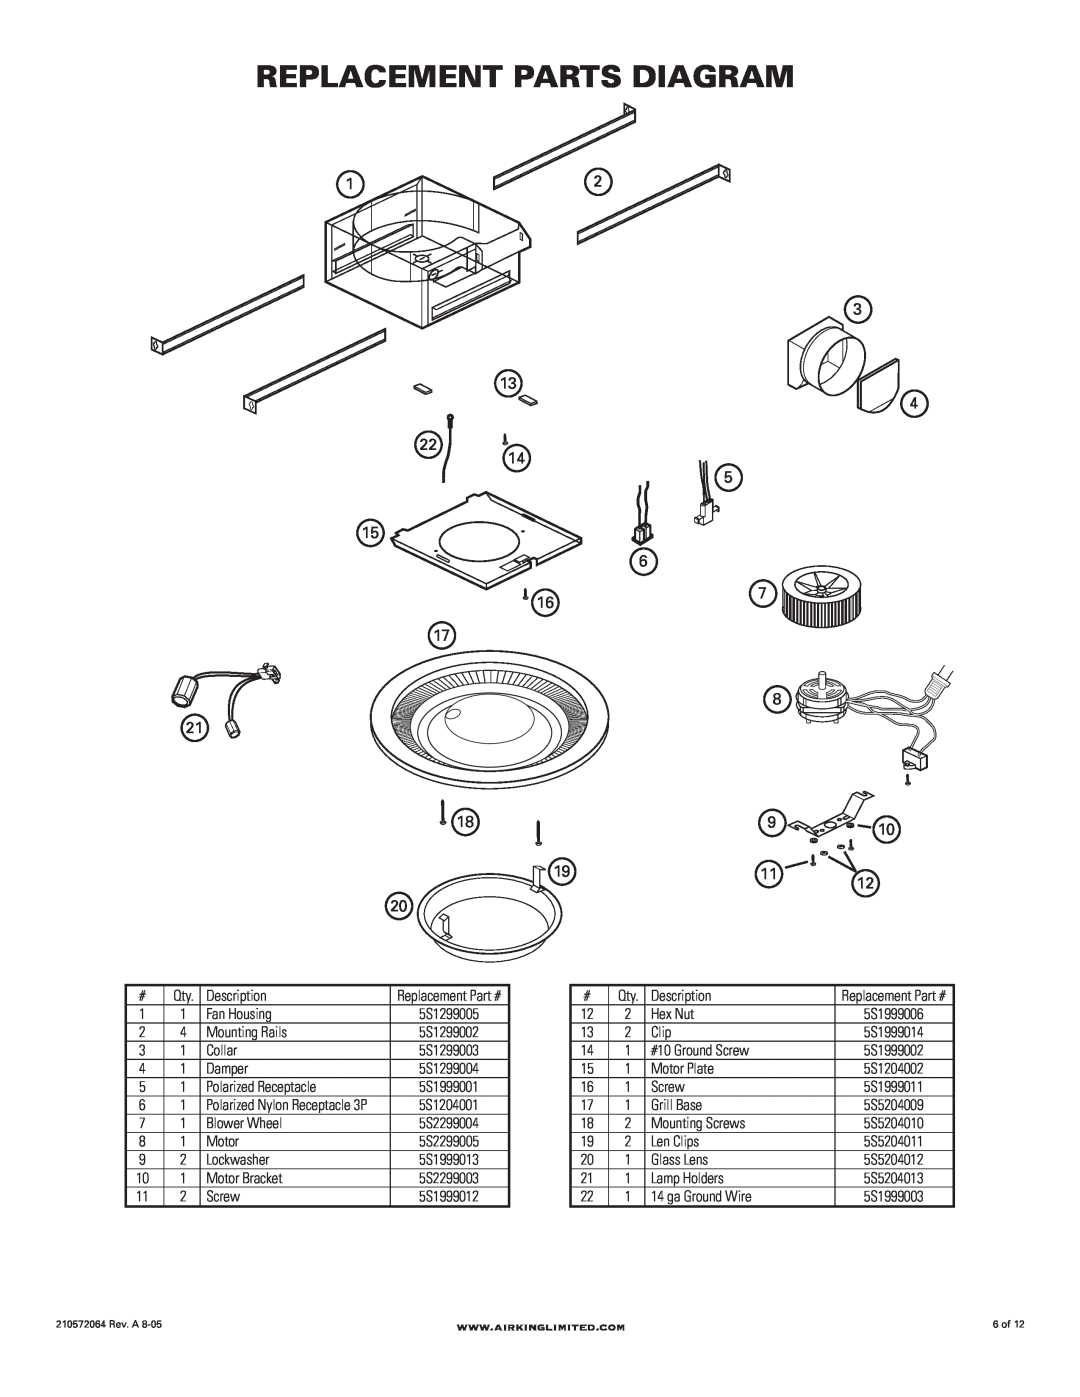 Air King DRLC107 manual Replacement Parts Diagram 